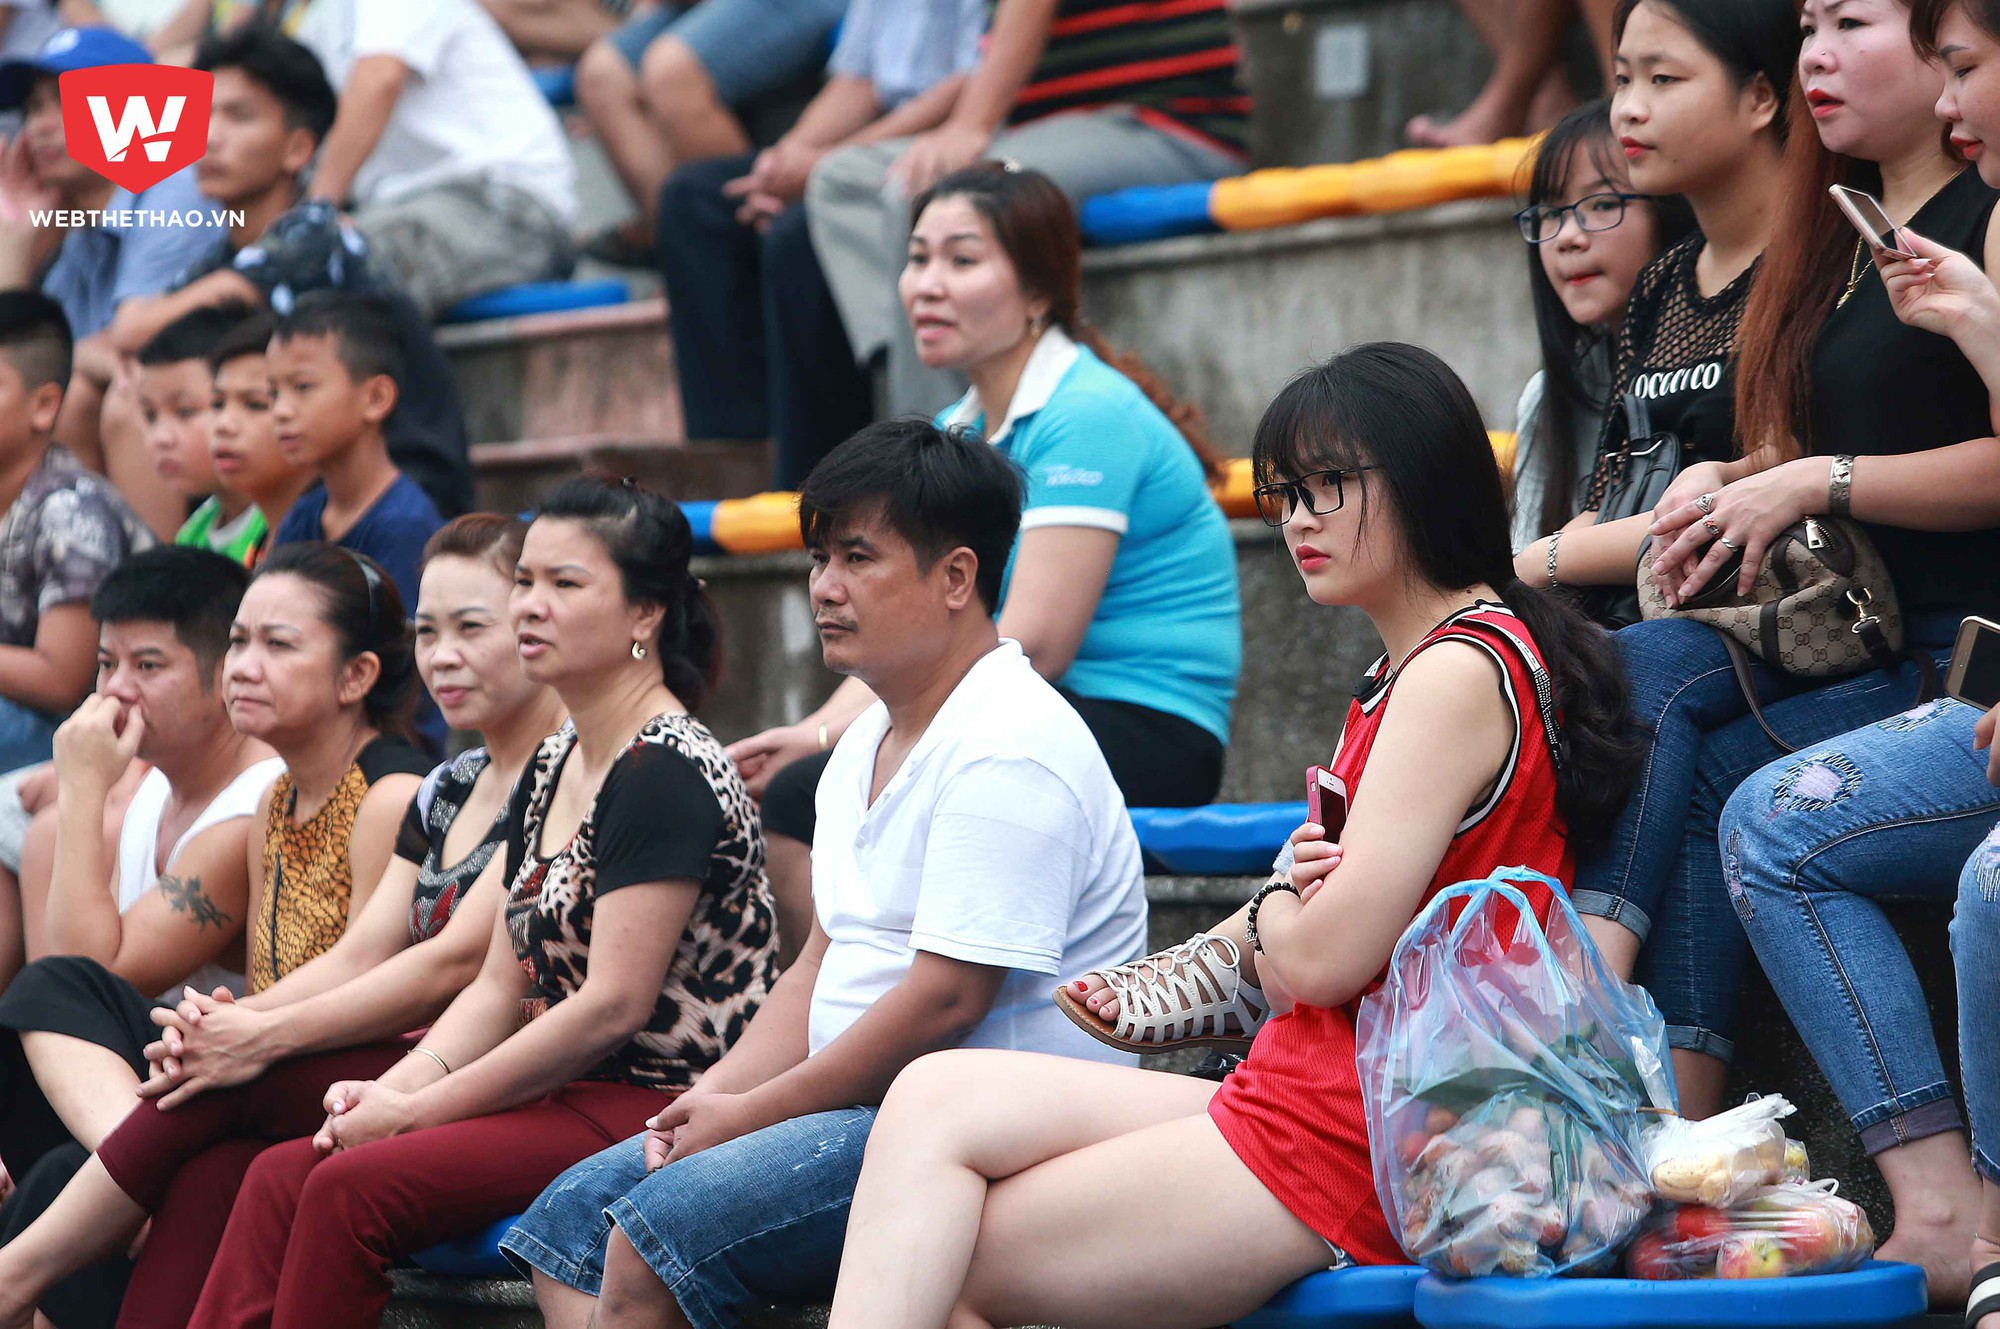 Trước khi trận đấu giữa U13 Phú Đô và U13 Ngô Thì Nhậm 30 phút, Hương Giang cùng nhóm bạn của mình đã có mặt tại sân bóng để chuẩn bị cổ vũ cho các cầu thủ nhí tranh tài với đối thủ đến từ miền Trung.